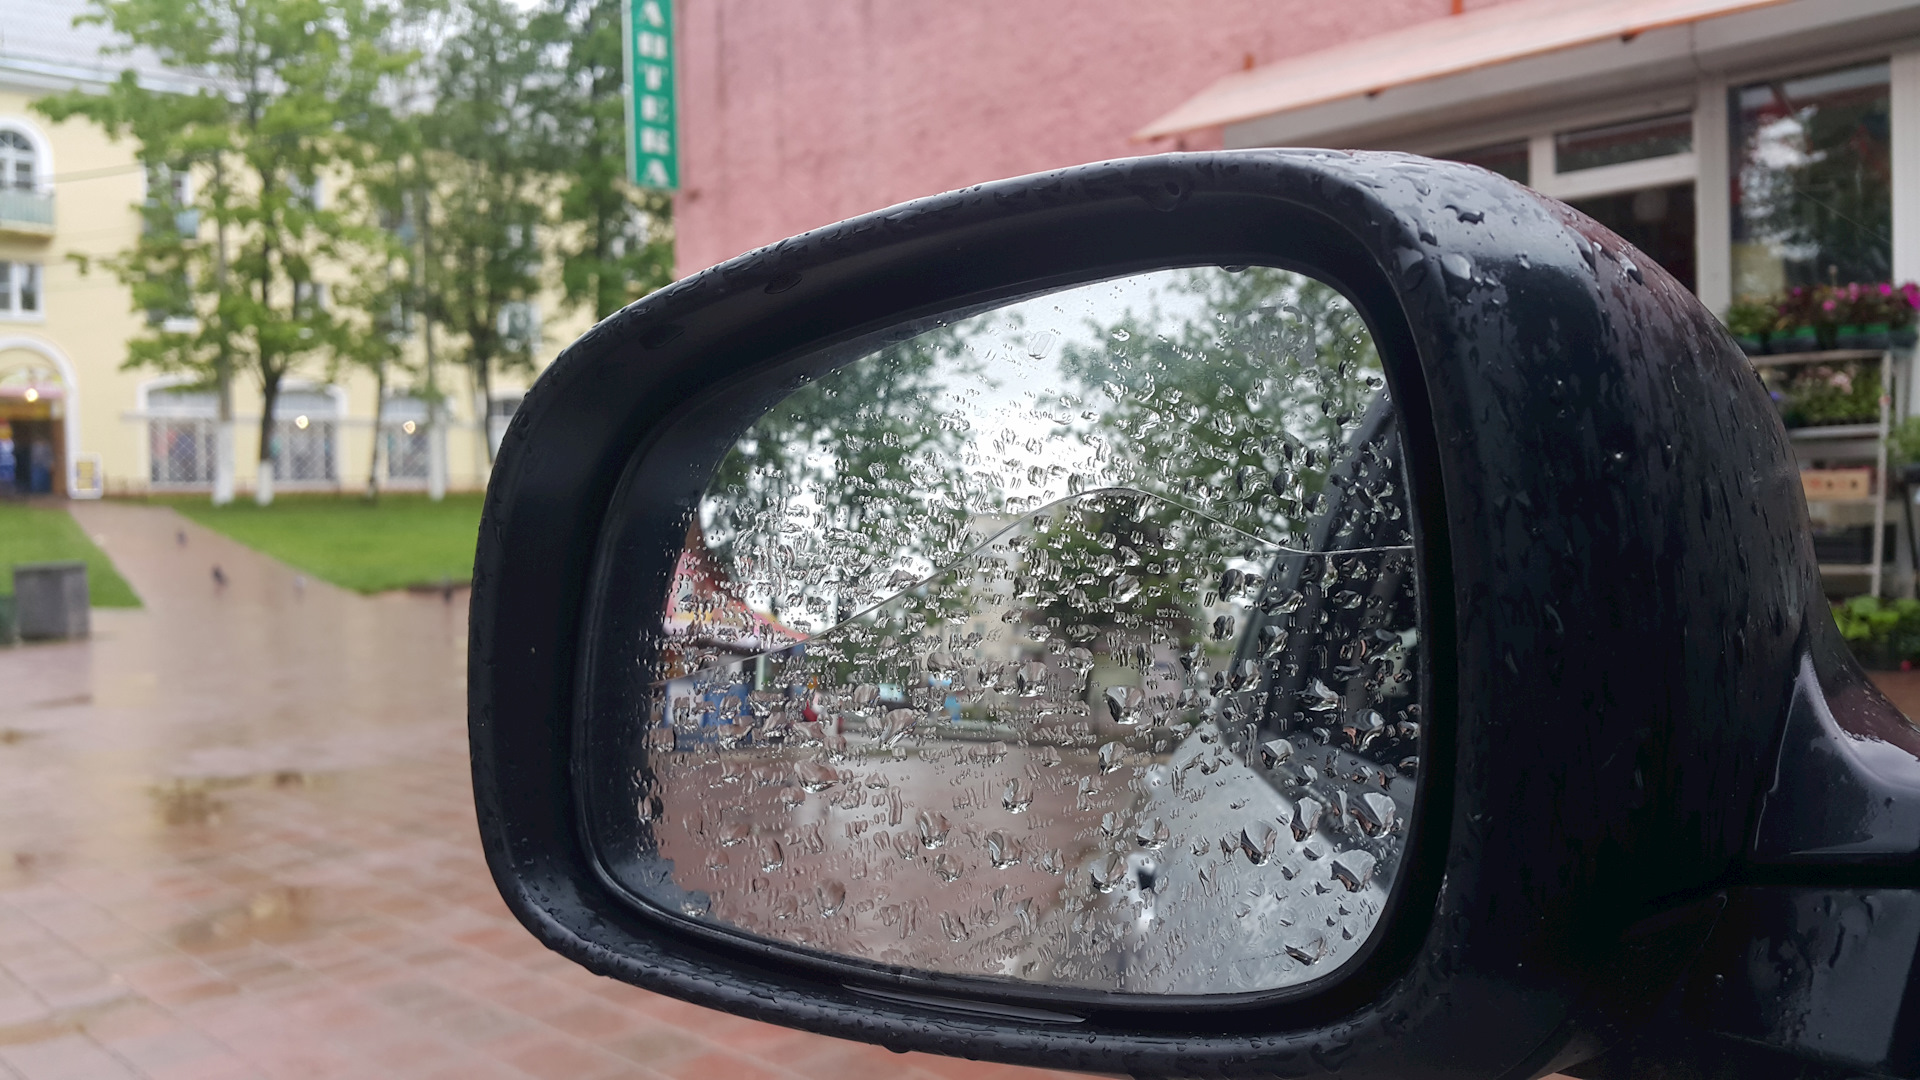 Водительское зеркало купить. Зеркальный элемент Suzuki Swift 3 с подогревом. Водительское зеркало. Оторванное водительское зеркало у exceed LX серый цвет реальное фото.